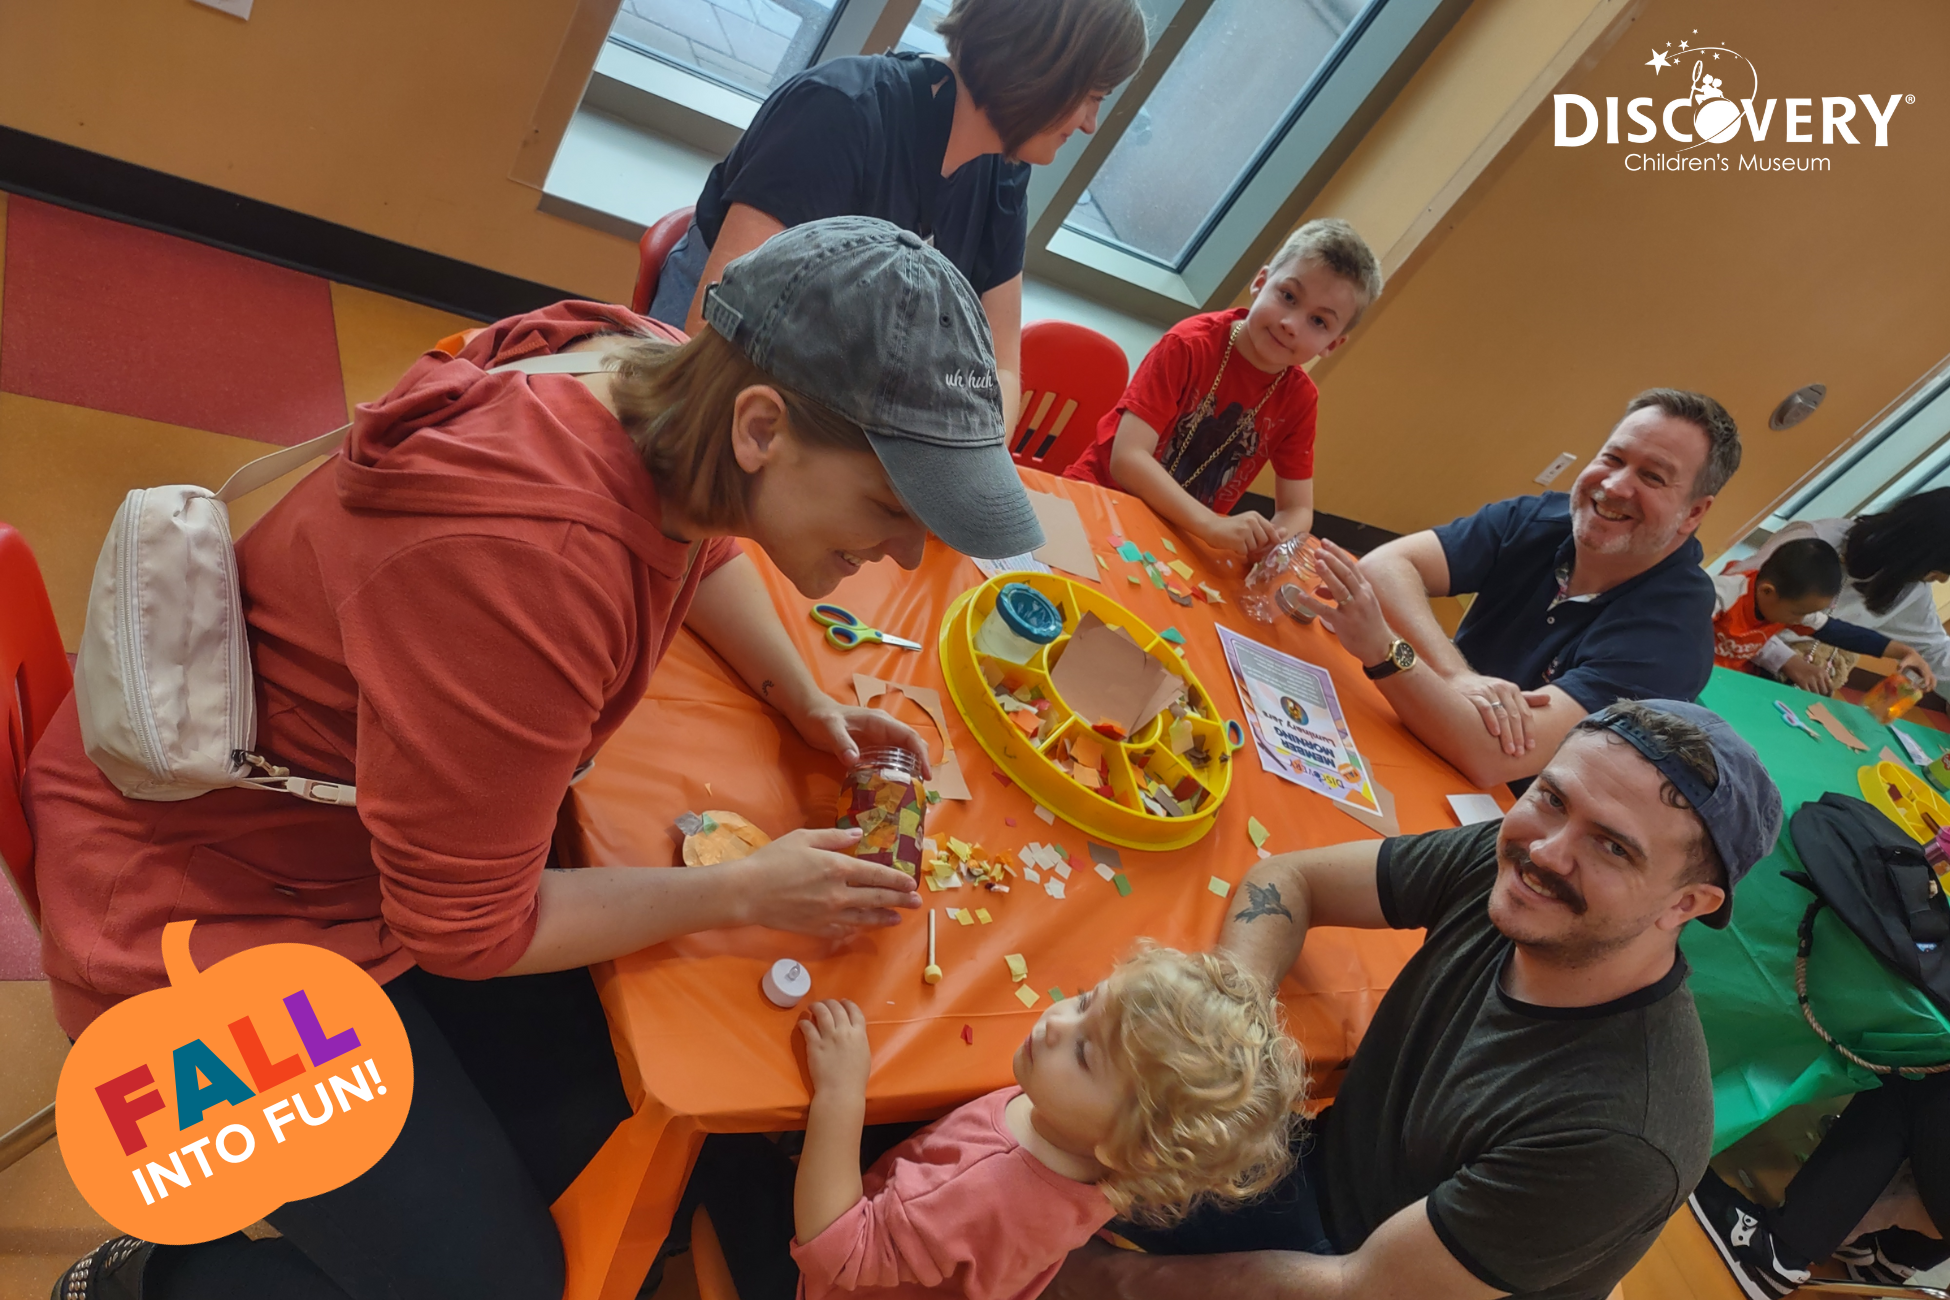 ディスカバリー子供博物館にて、色紙を並べたオレンジ色の小さなテーブルに座る4人の親と2人の子供たち。